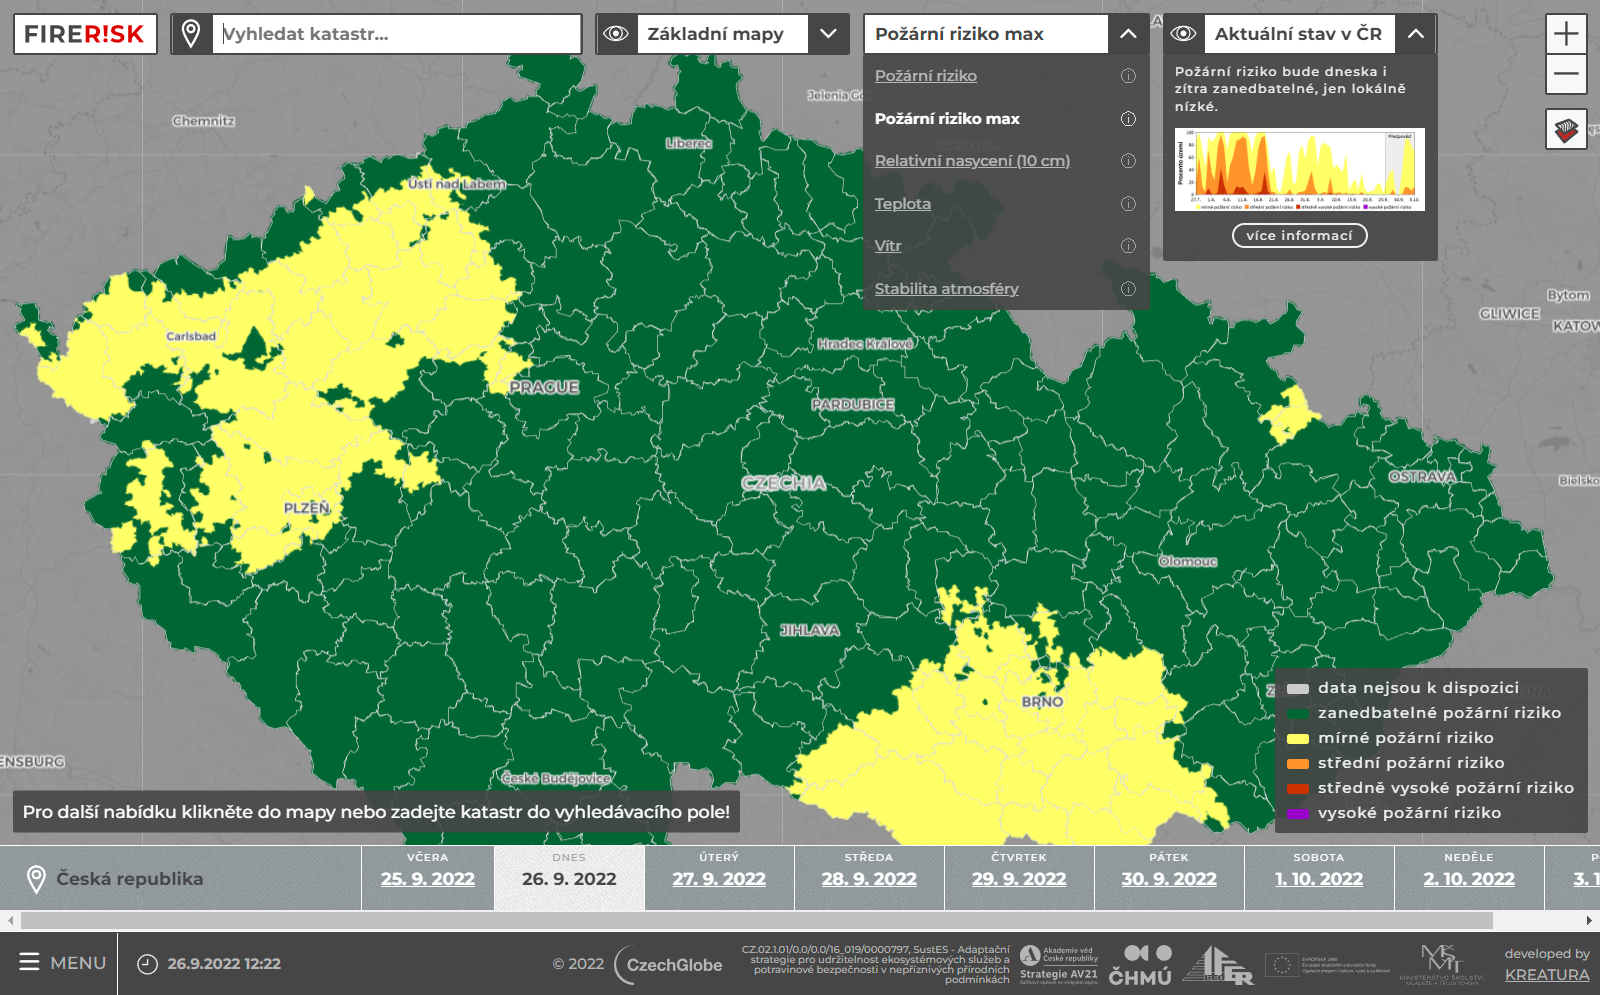 Aplikace FIRERISKprozradí pravděpodobnost požáru v lese po celé ČR